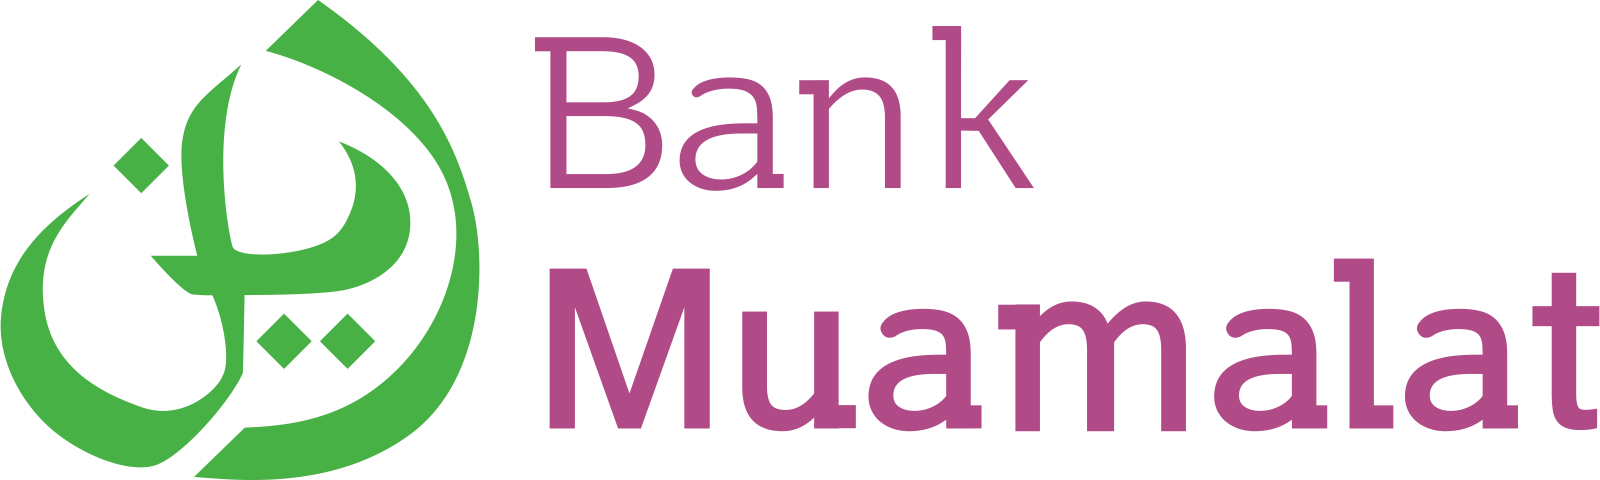 Bank Muamalat Logo (PNG480p) - Vector69Com